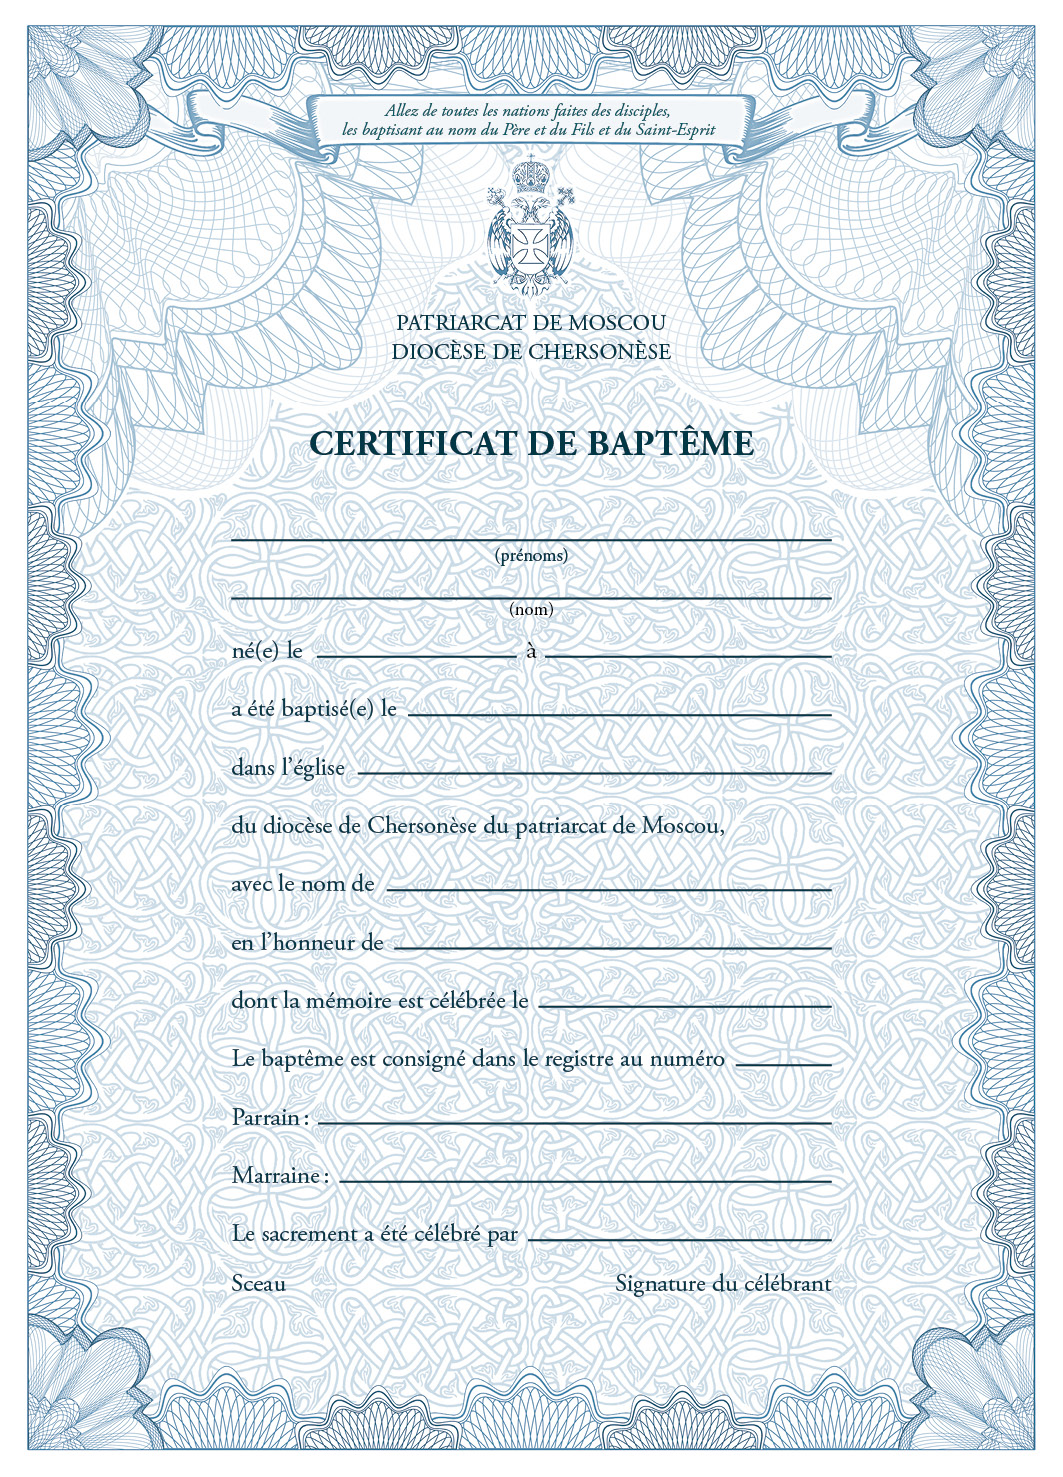 Издательство семинарии выпустило свидетельства о крещении на французском языке